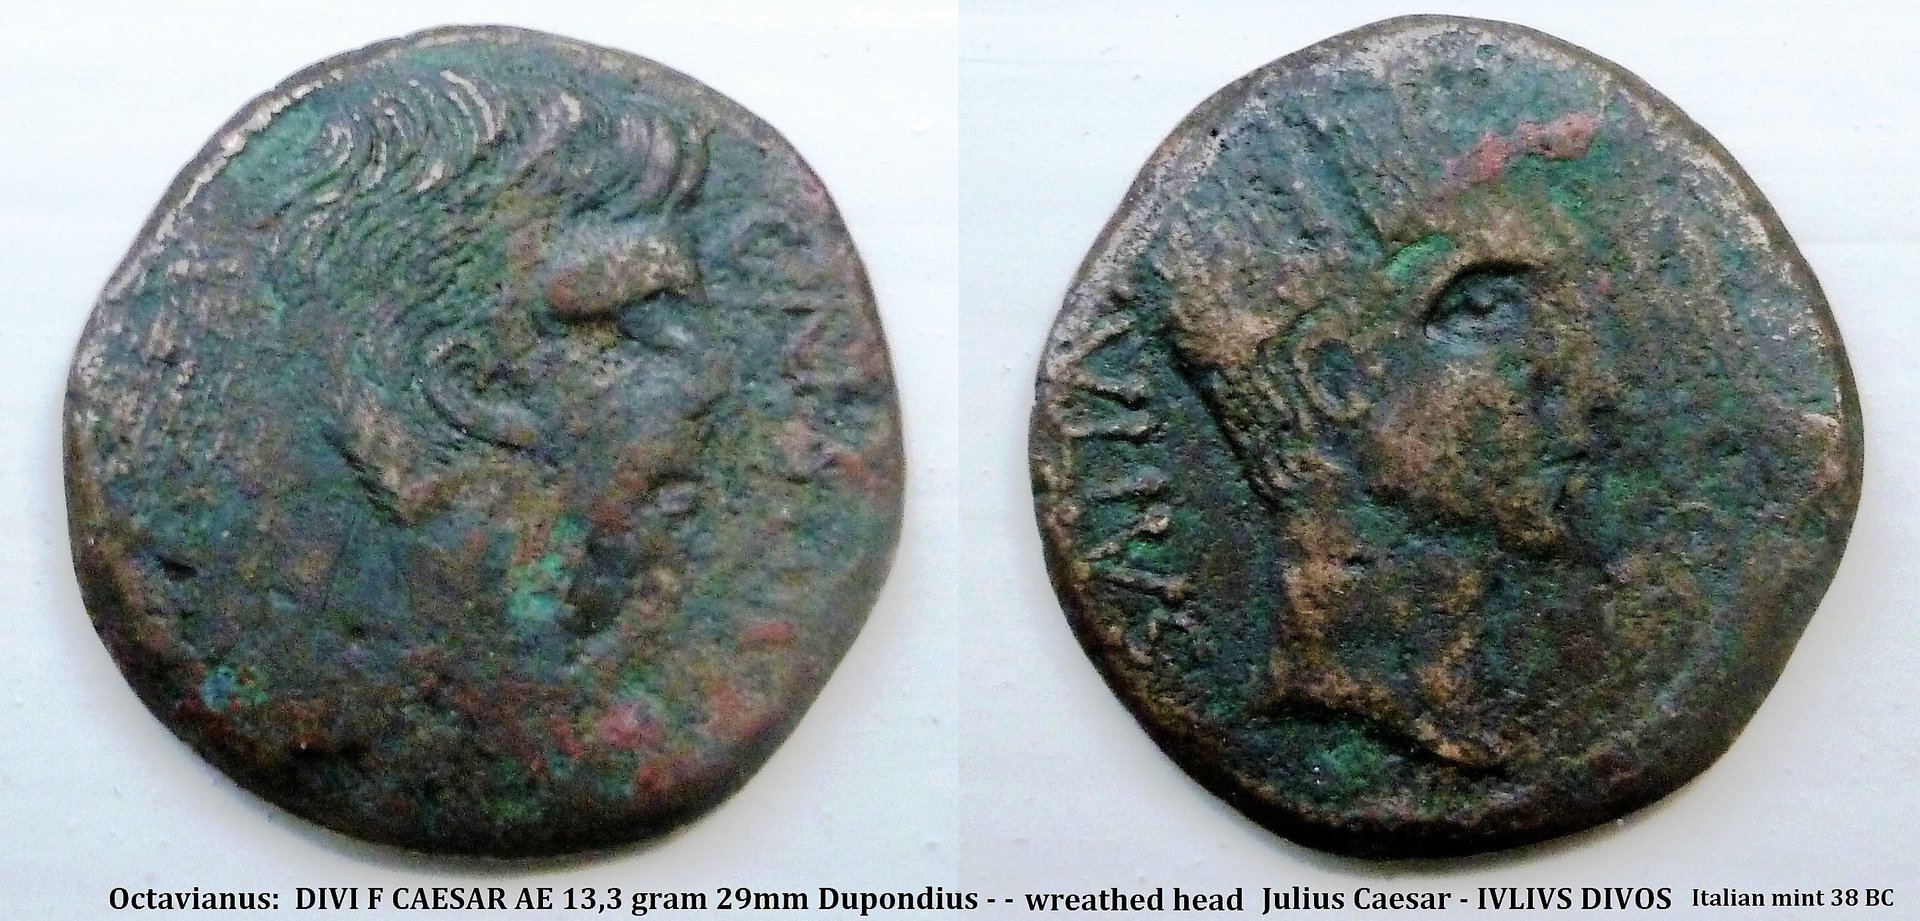 P1140140 julius caesar italian mint.jpg